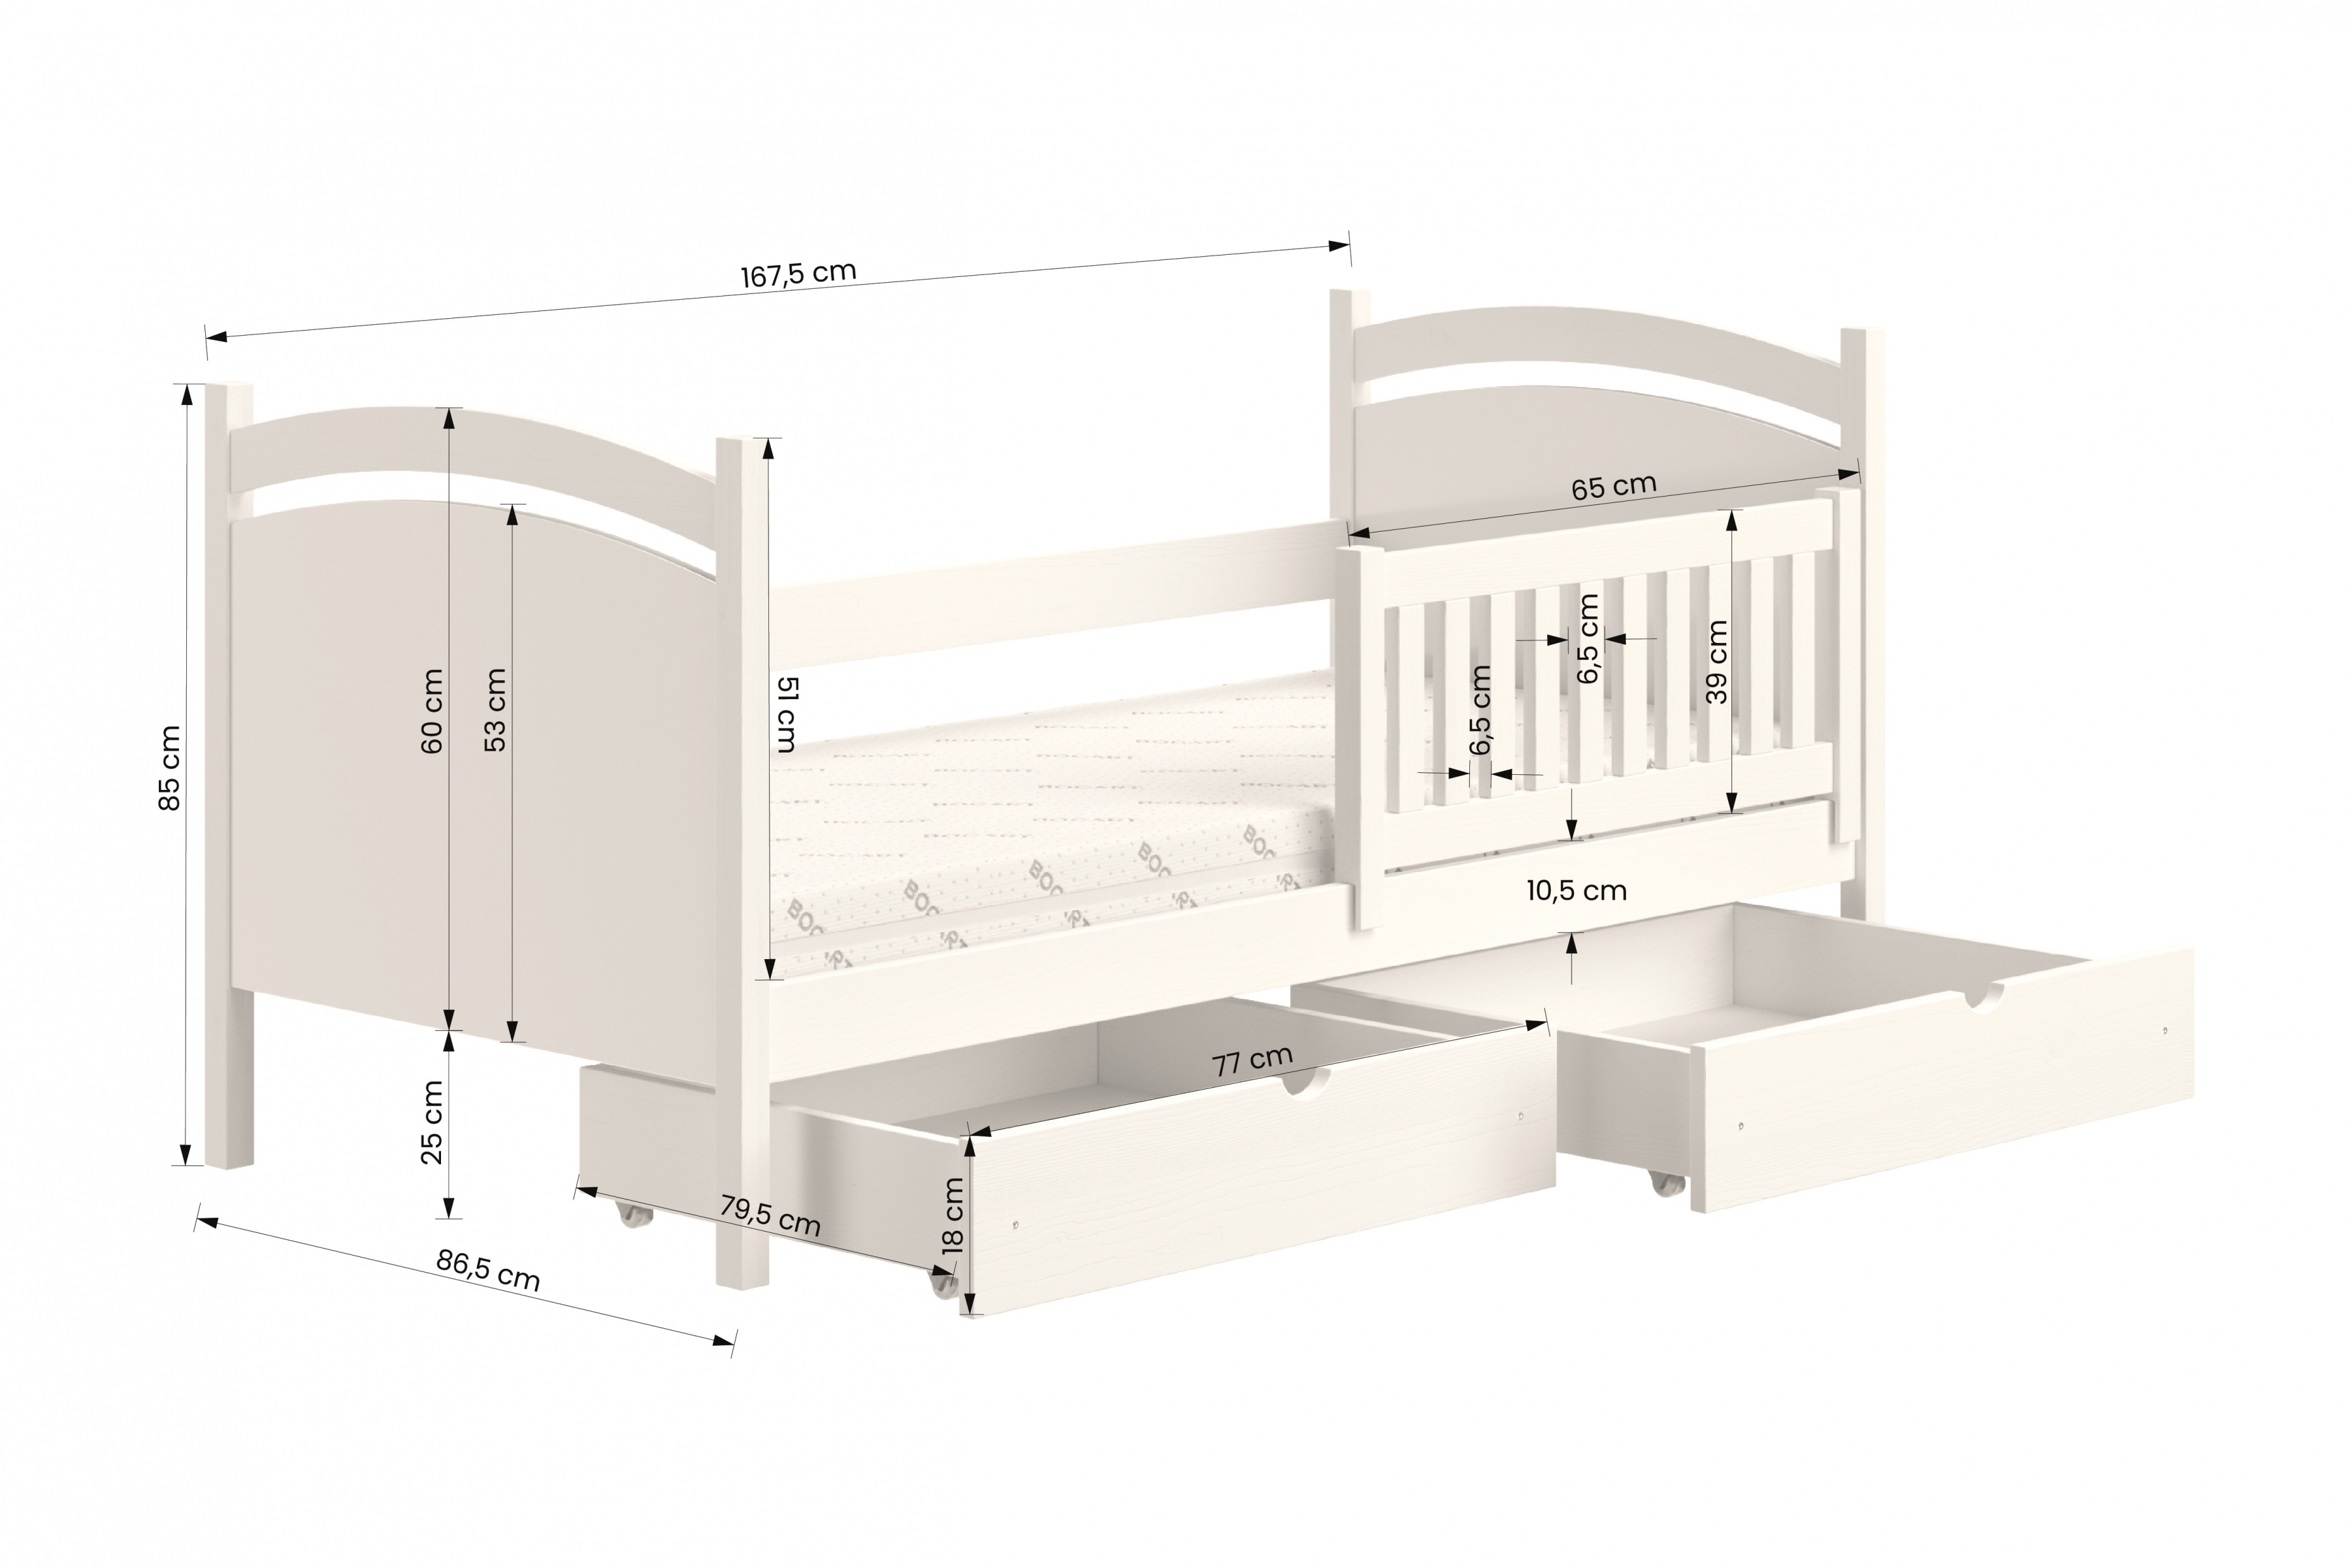  Detská posteľ s tabuľou Amely - Farba Čierny, rozmer 80x160 Posteľ dzieciece z tablica suchoscieralna Amely - Rozmery